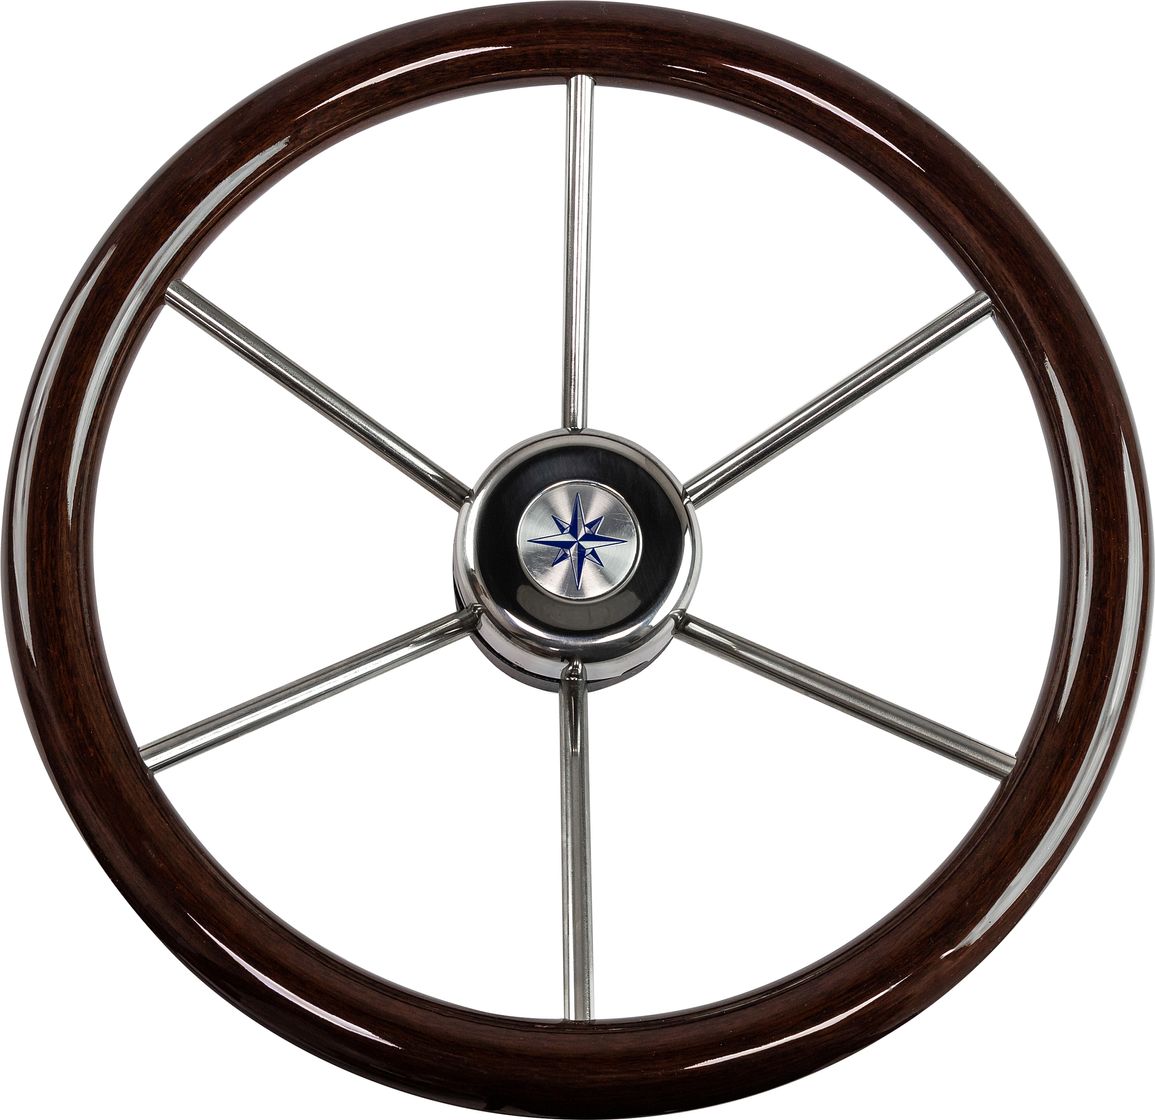 Рулевое колесо LEADER WOOD деревянный обод серебряные спицы д. 390 мм VN7390-33